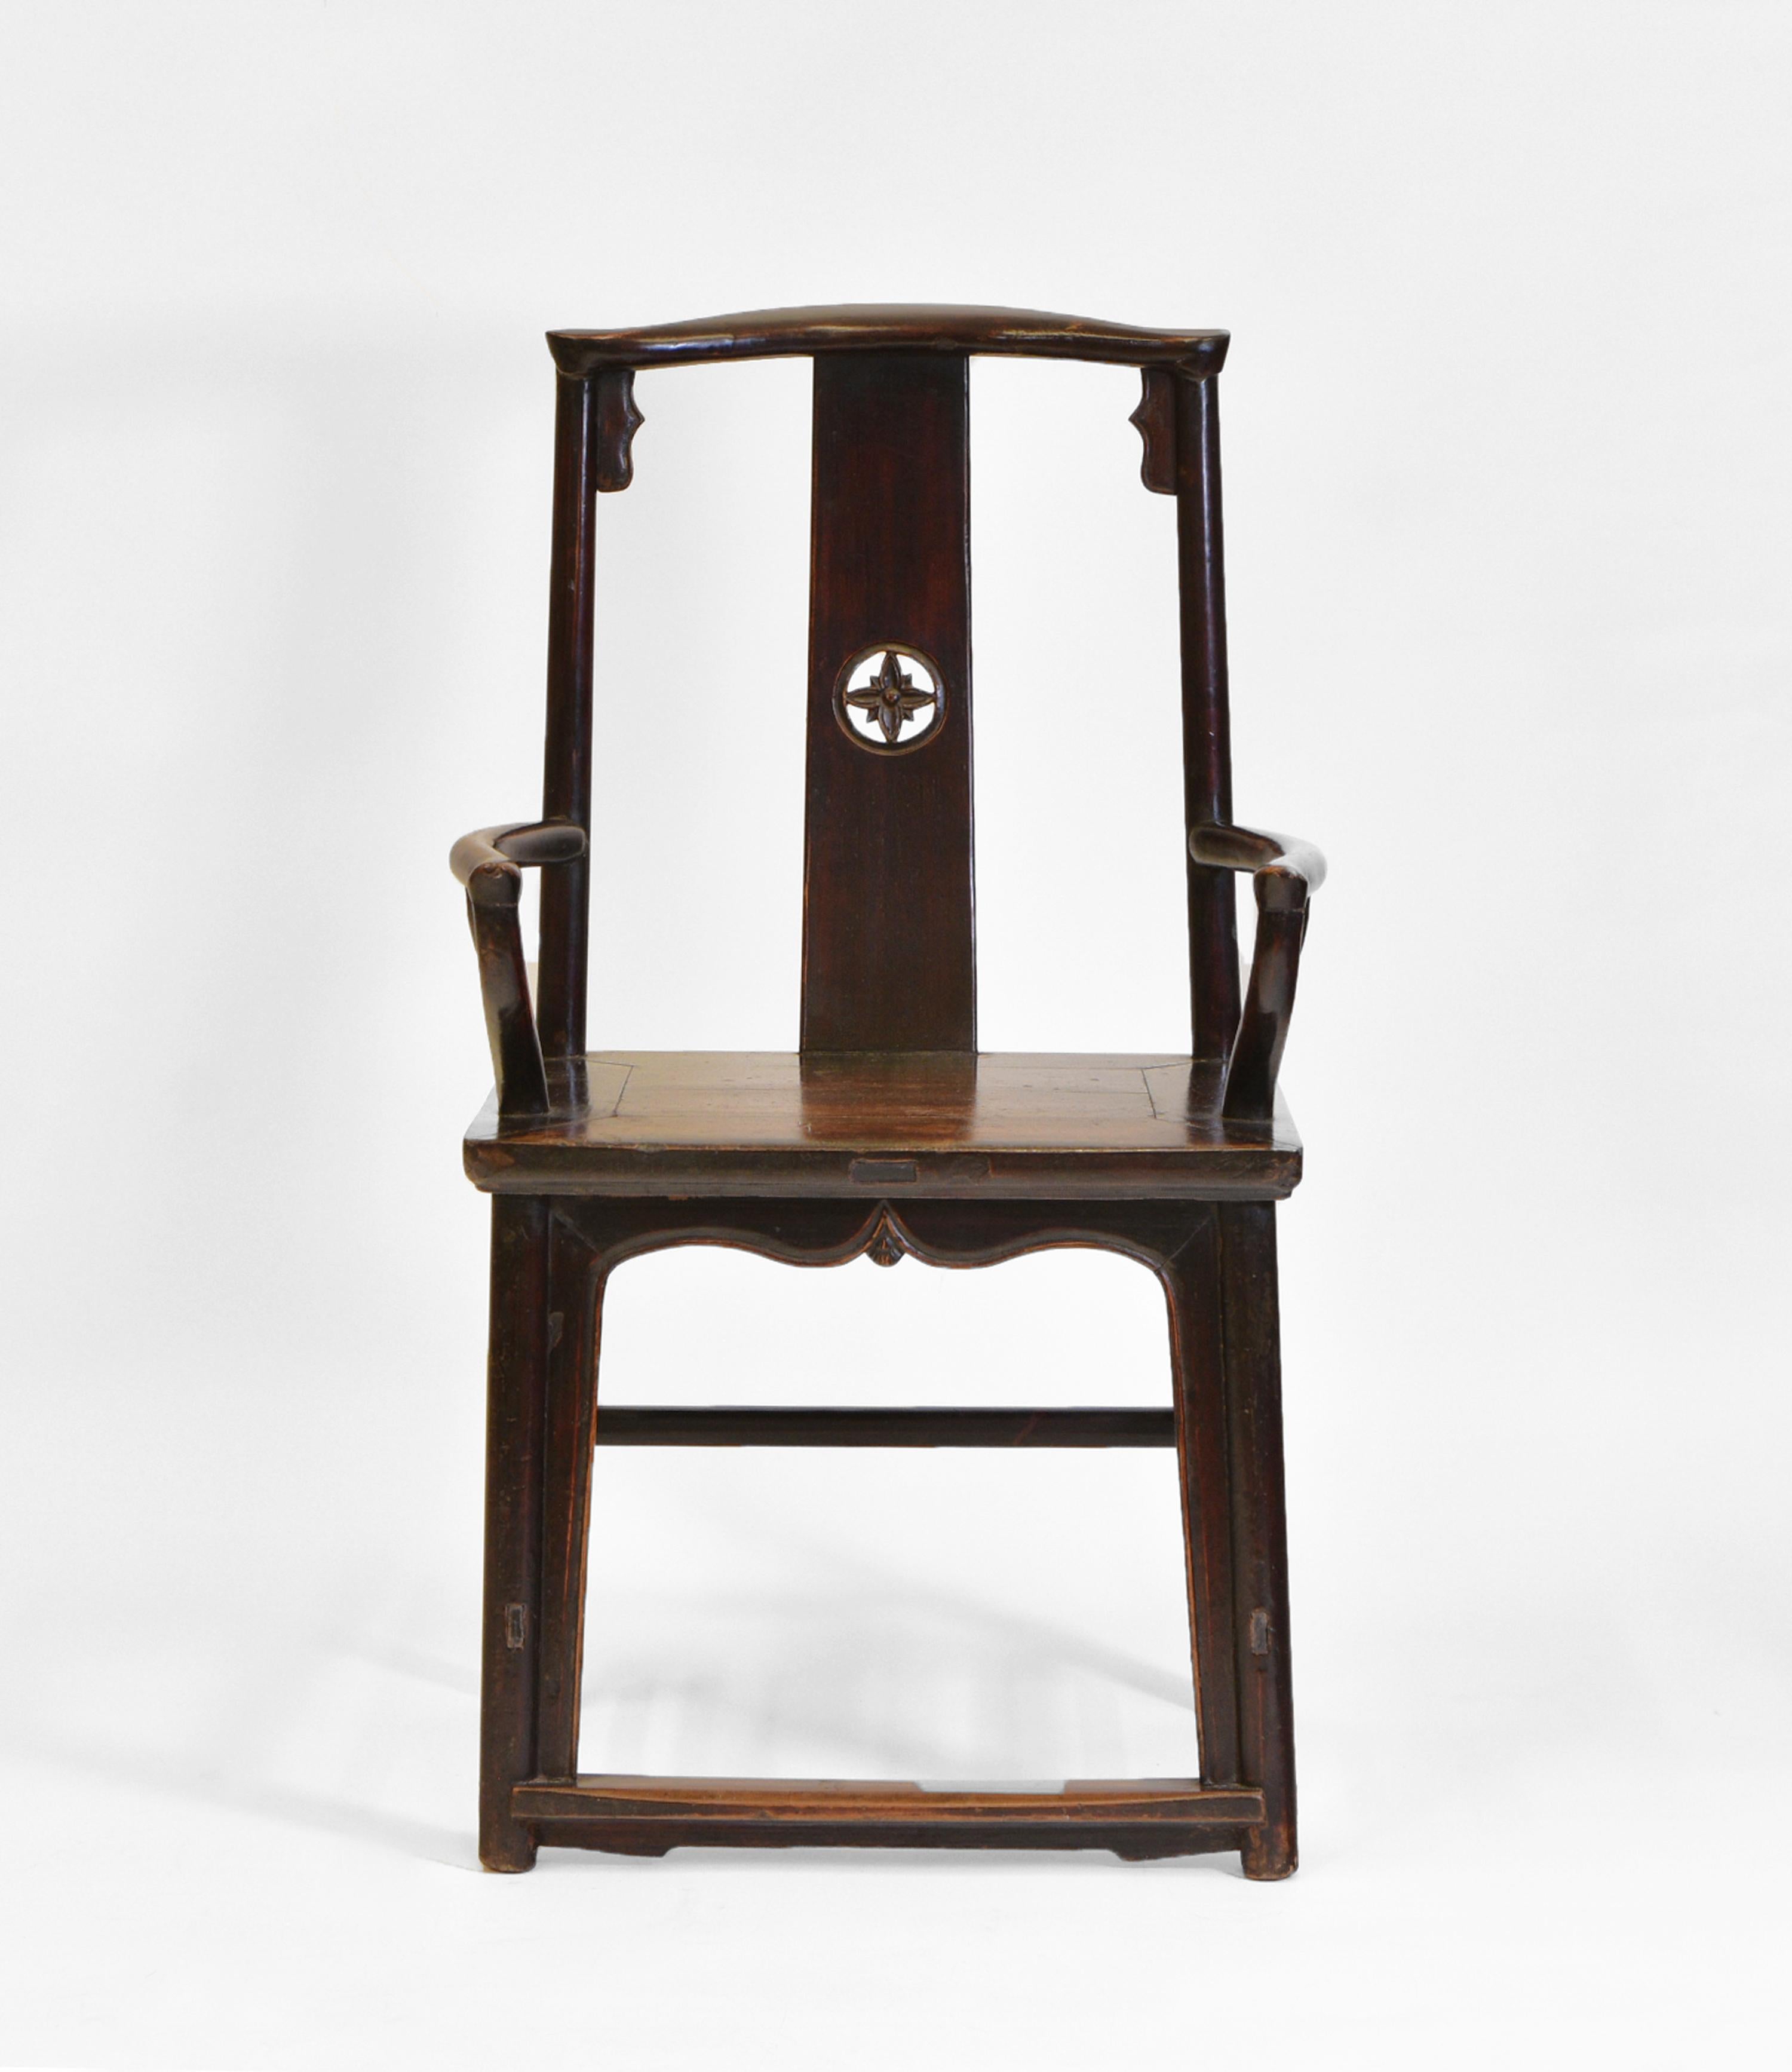 Ein antiker chinesischer Sessel aus offenem Hartholz. Um 1880.

Der Stuhl weist eine gute Patina und altersbedingte Abnutzungserscheinungen auf. Ein aufrechtes Design mit einem gewölbten Splat, der der Kurve der Wirbelsäule folgt. Dekorative Schürze